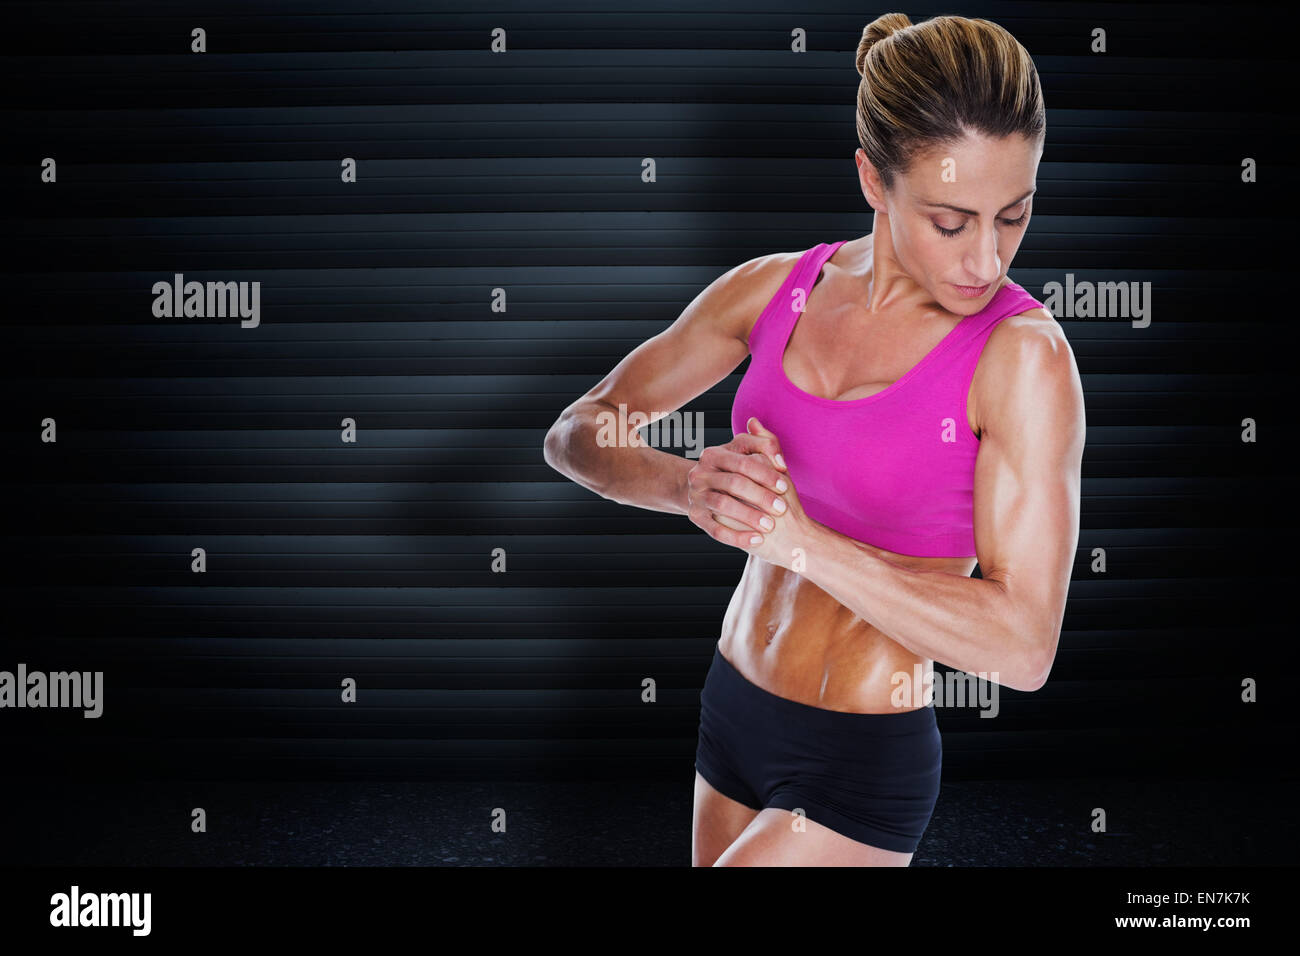 Immagine composita di bodybuilder femminile flessione con le mani insieme Foto Stock